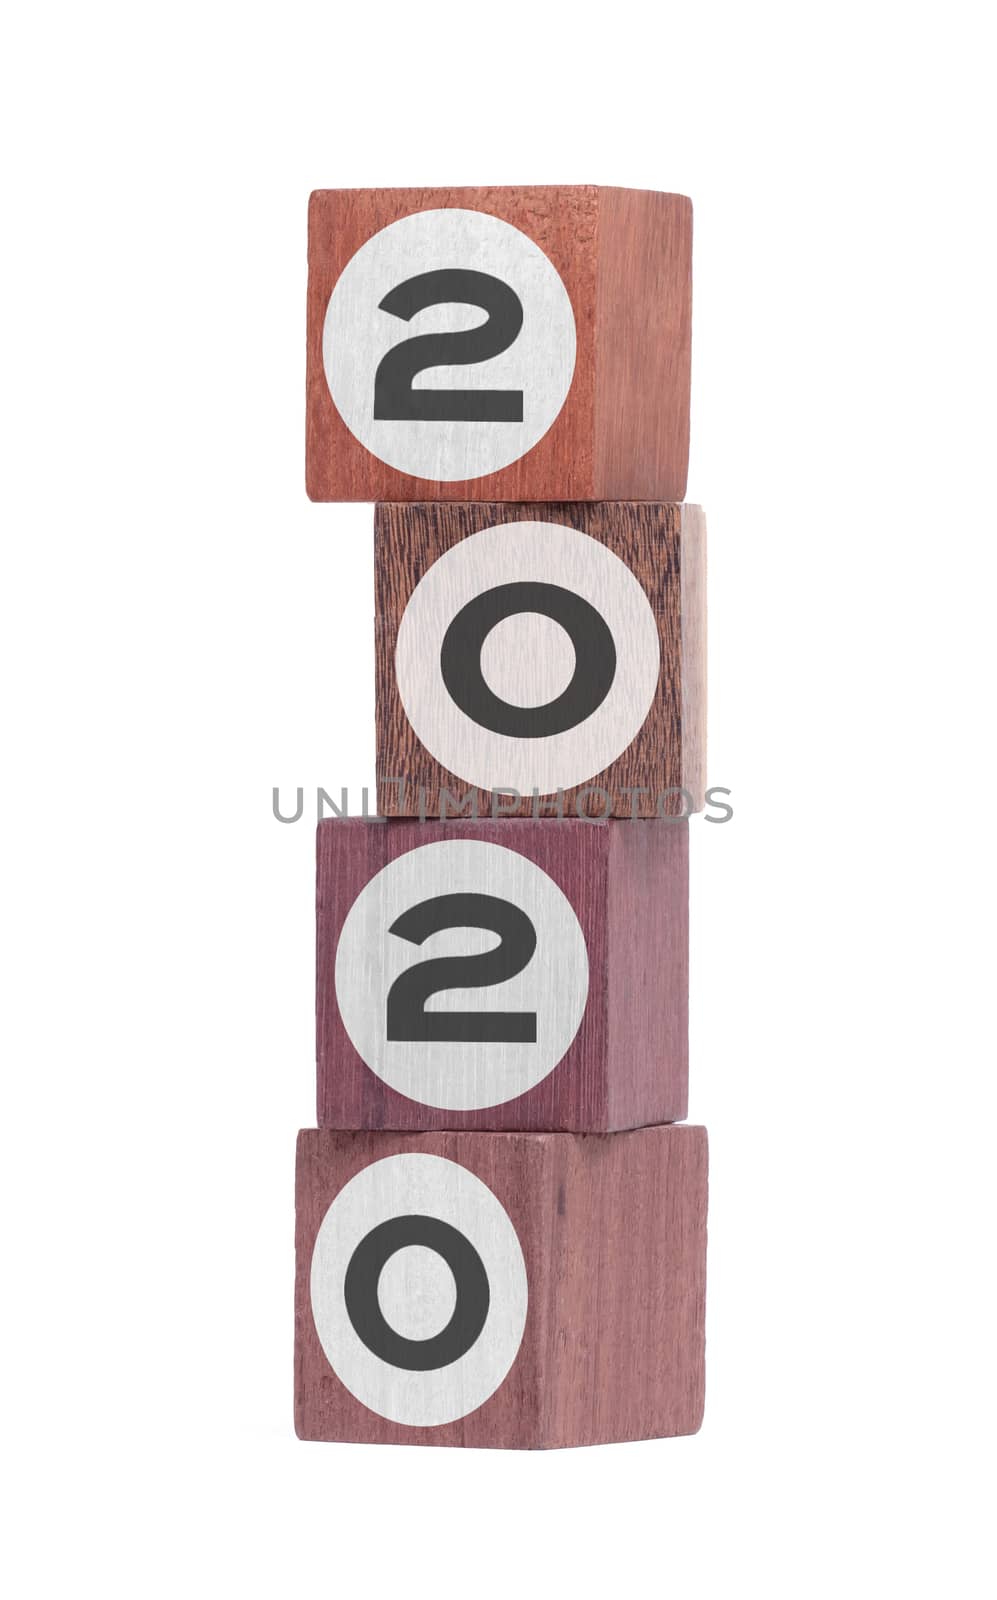 Four isolated hardwood toy blocks on white, saying 2020